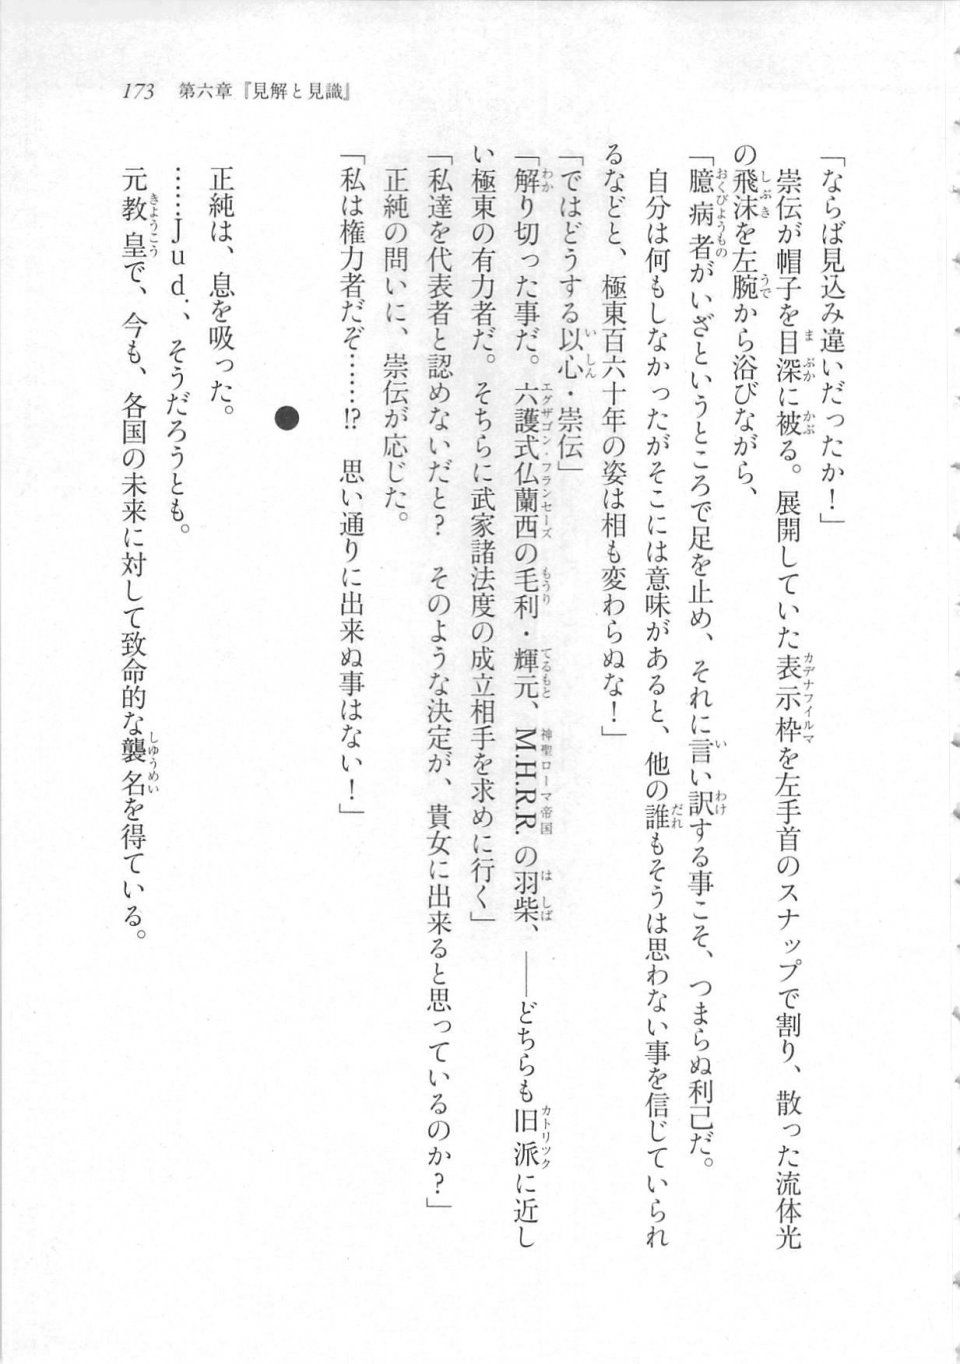 Kyoukai Senjou no Horizon LN Sidestory Vol 3 - Photo #177